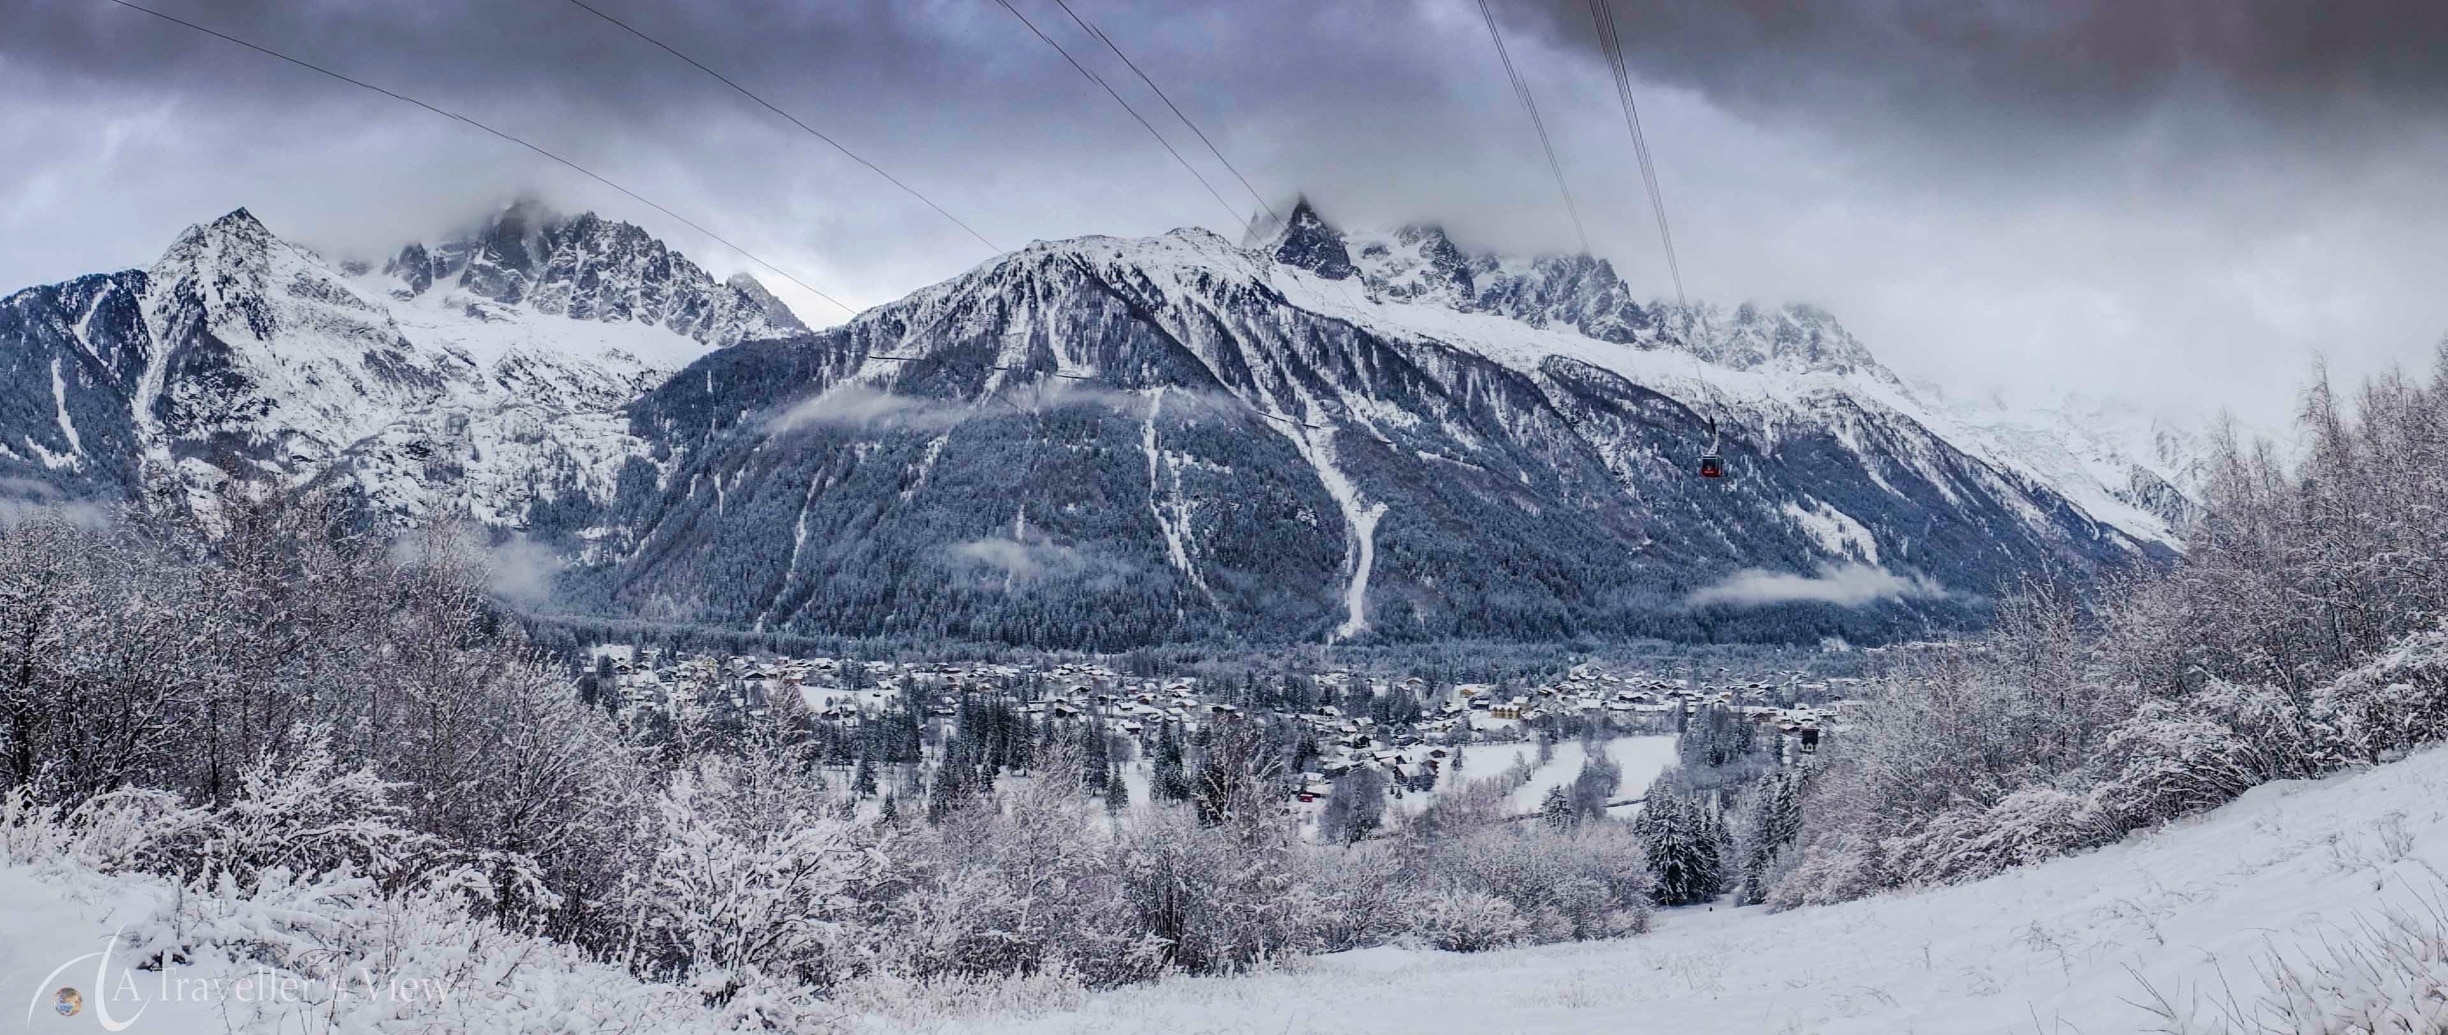 Domaine skiable Brévent-Flégère, Chamonix-Mont-Blanc, Haute-Savoie (département), France